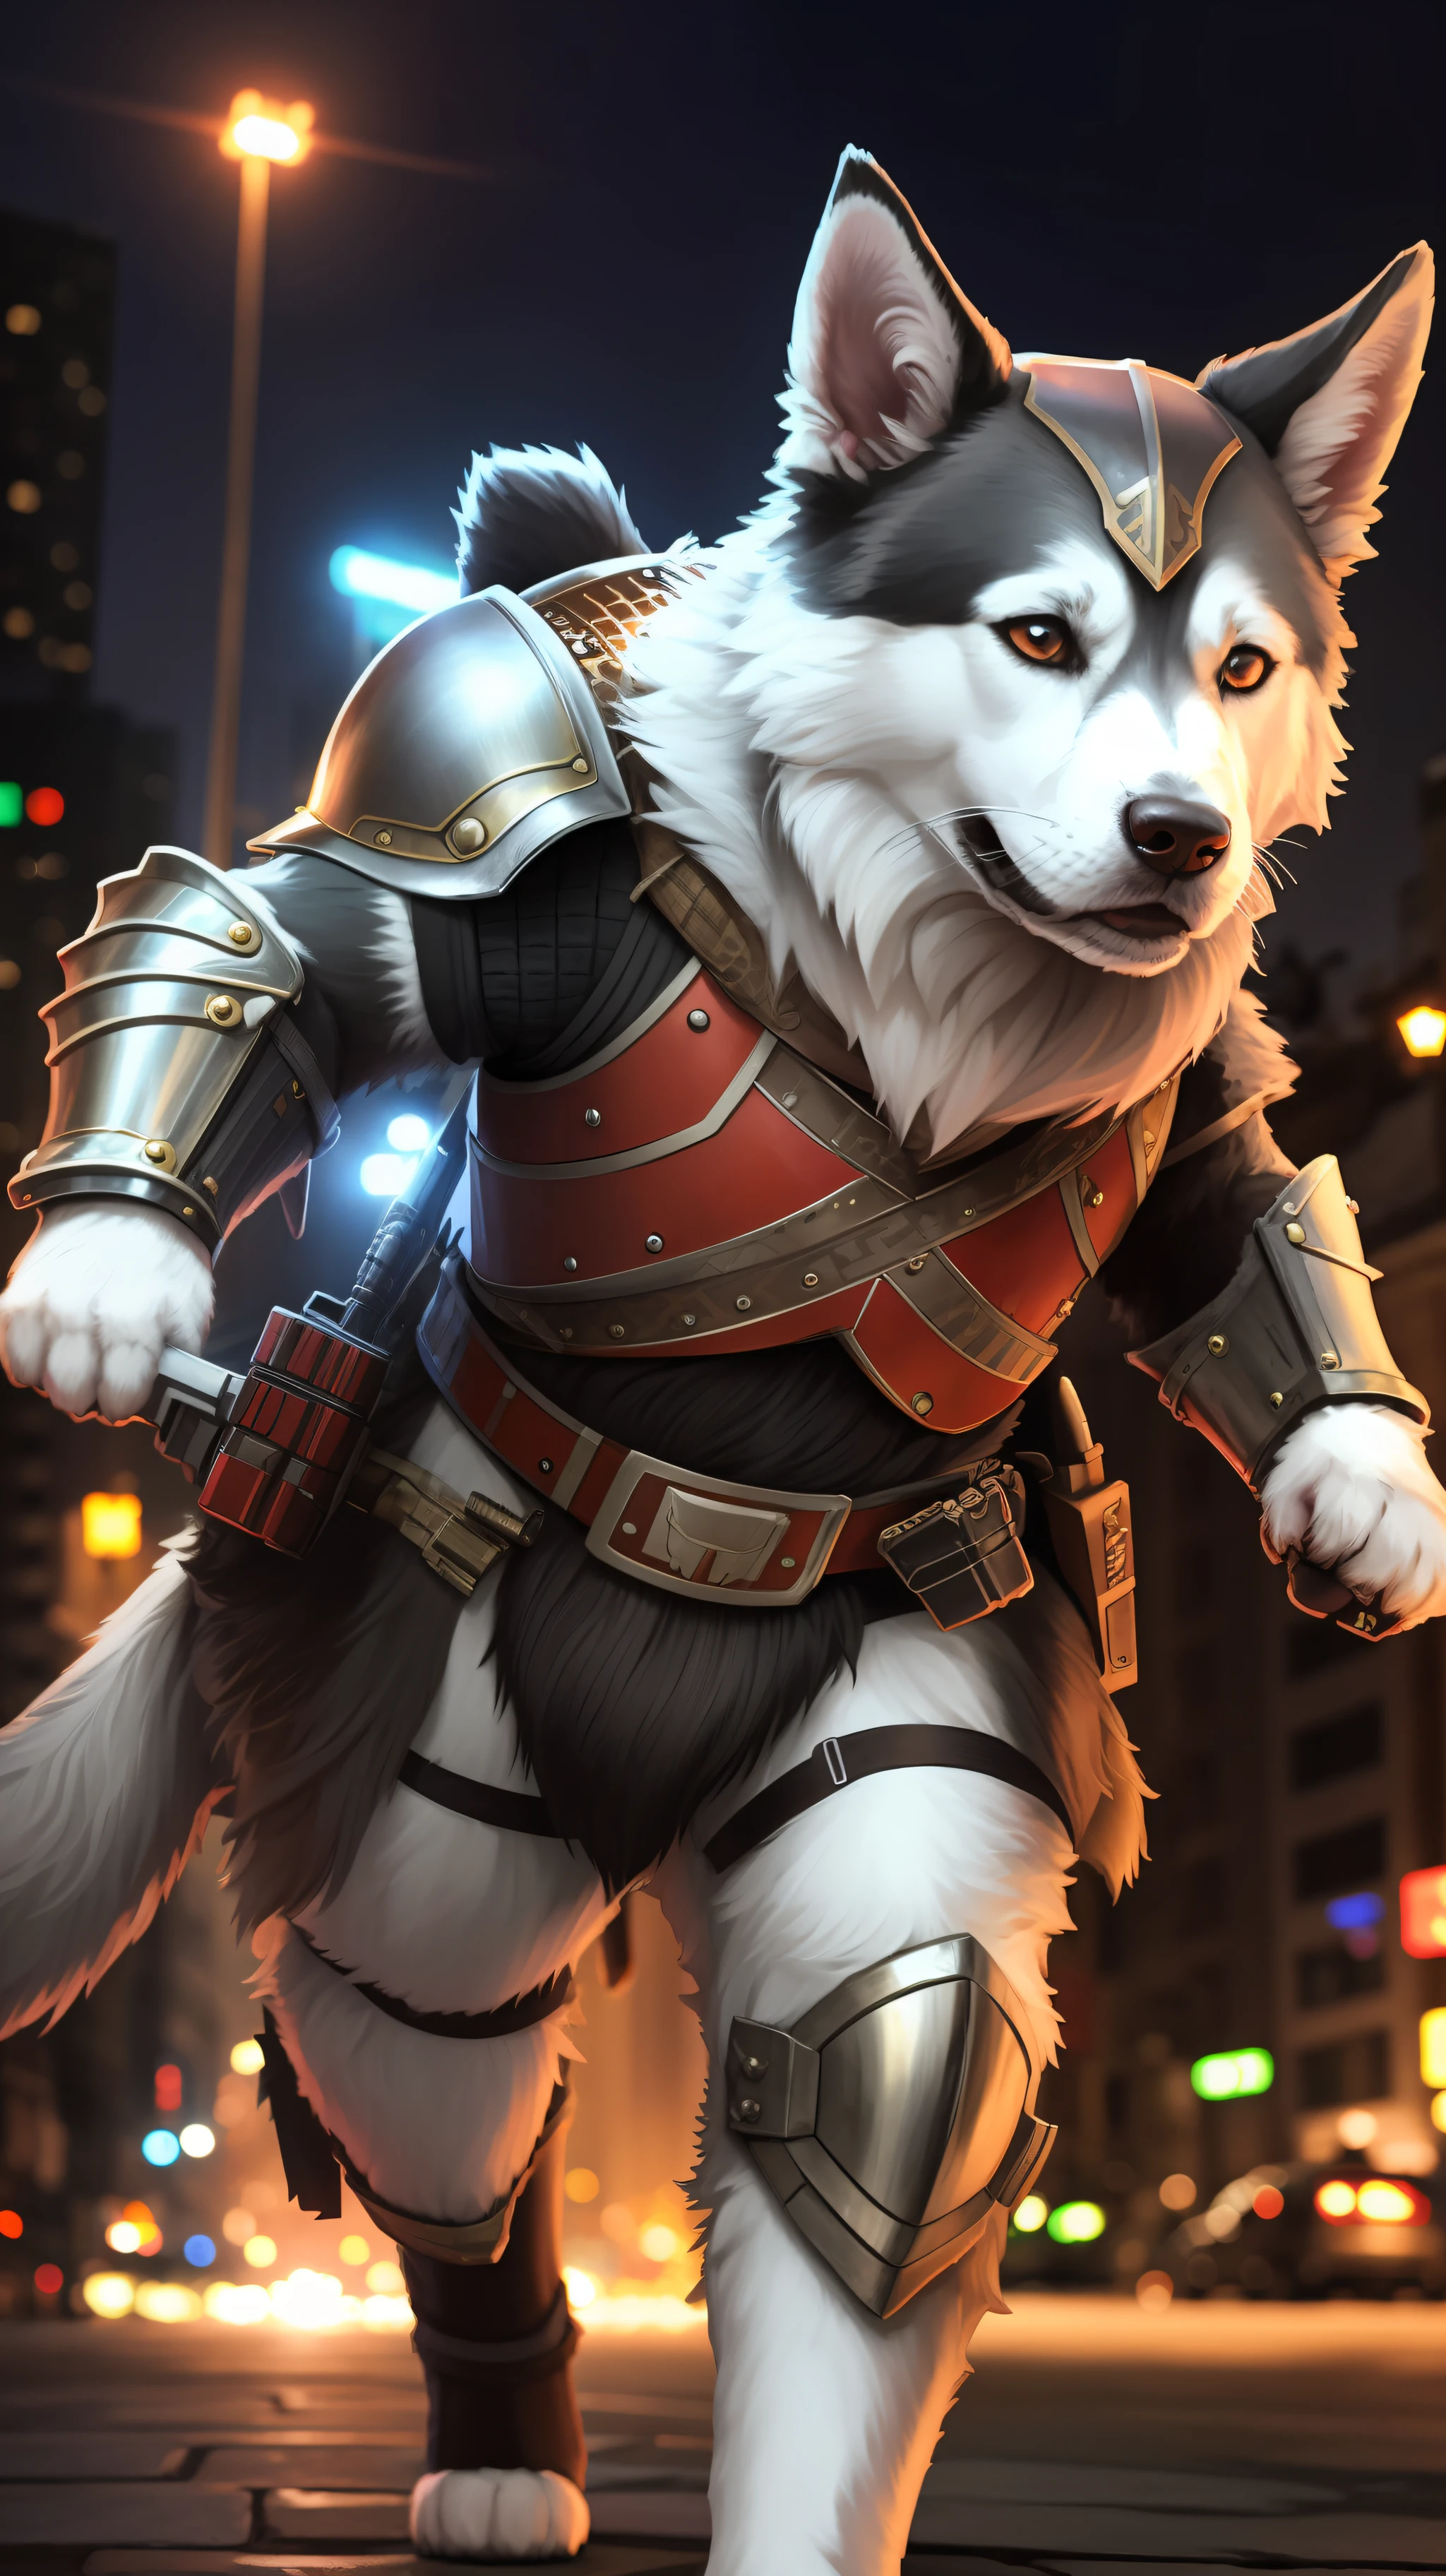 1身穿铠甲的毛茸茸的武士犬,勇敢而有枪,逼真的 8k,在夜晚的霓虹城市,明亮的颜色--自动--s2